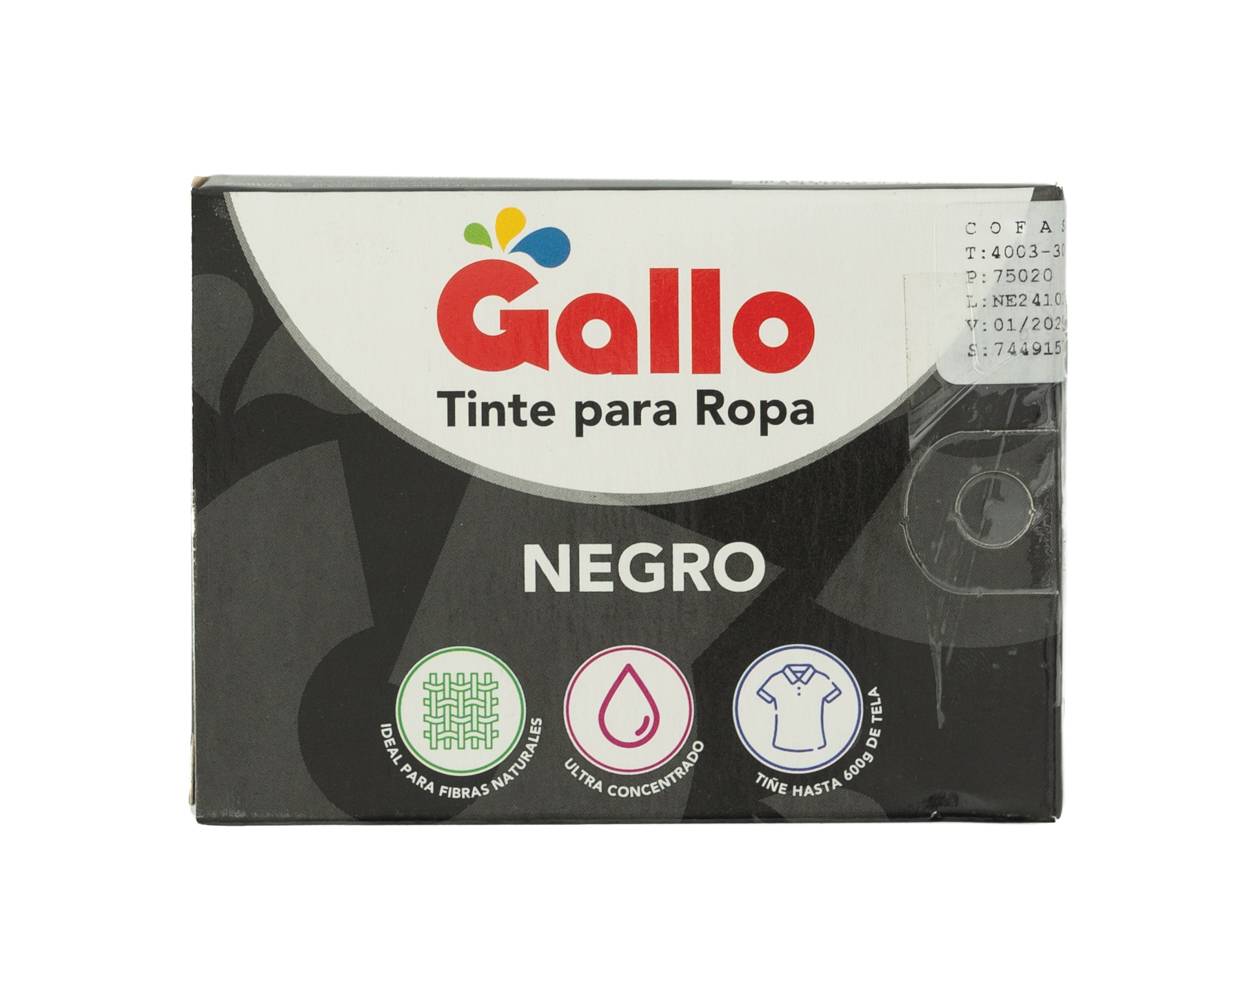 Gallo tinte para ropa color negro (caja 15 g)